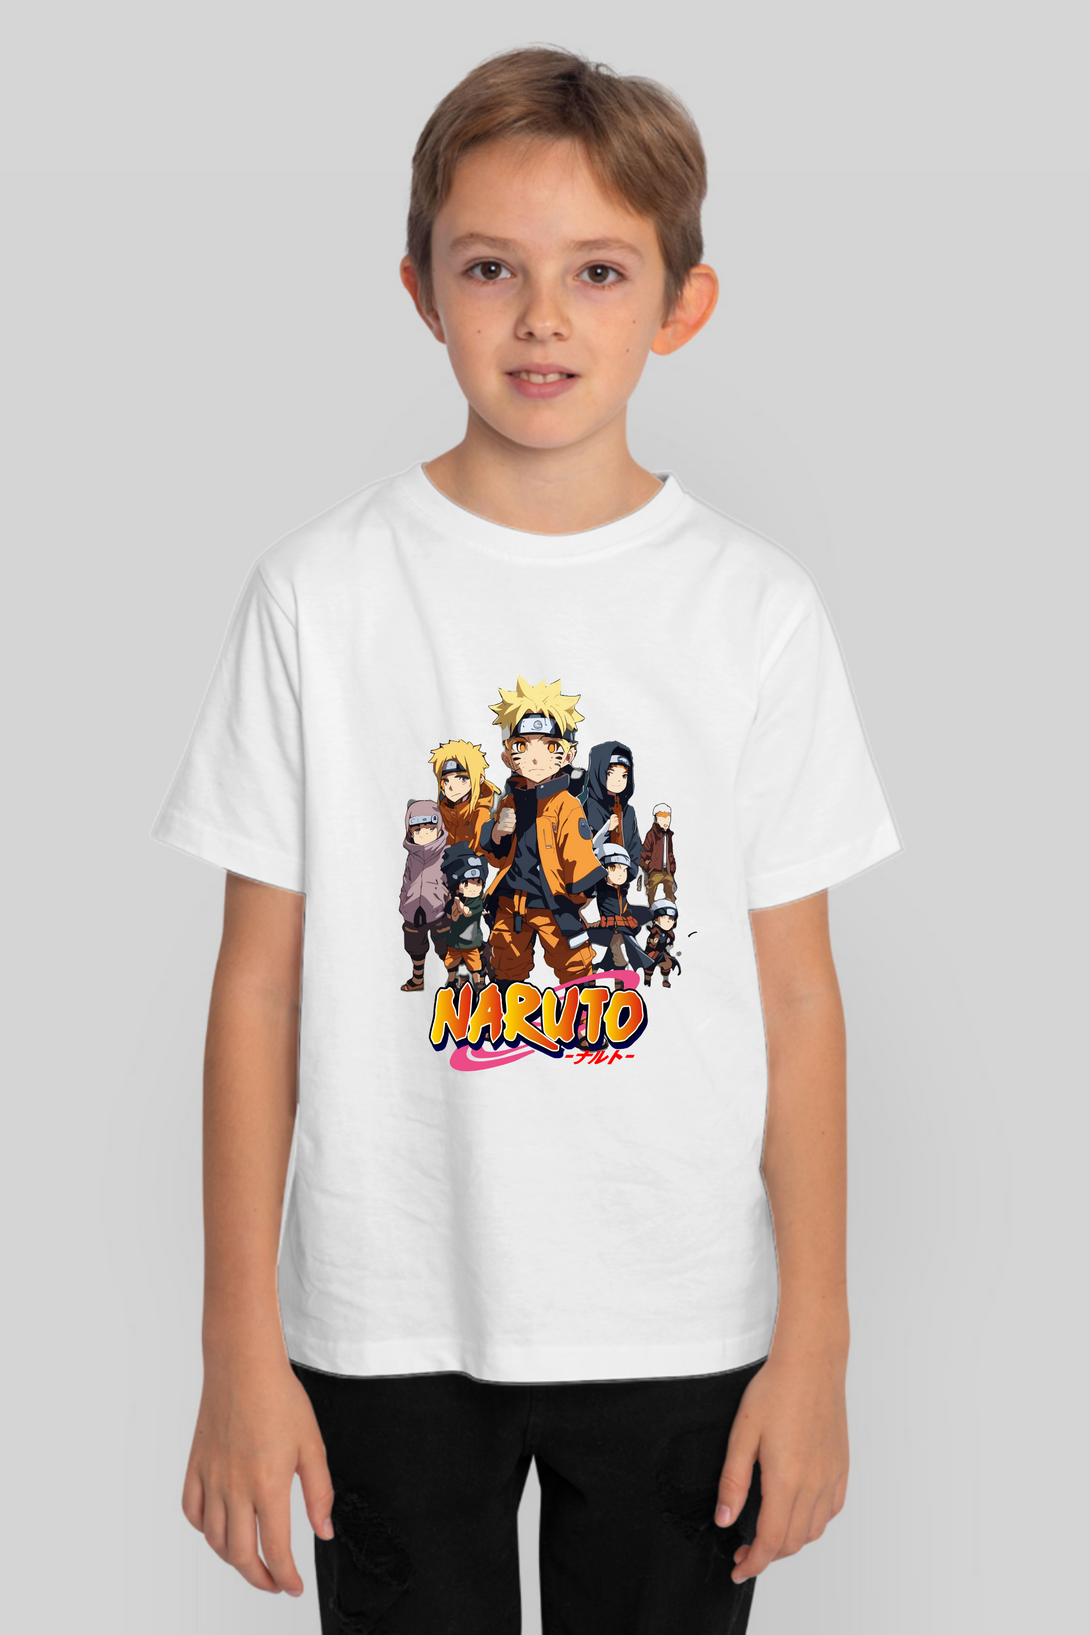 Anime Tiny Naruto Printed T-Shirt For Boy - WowWaves - 7